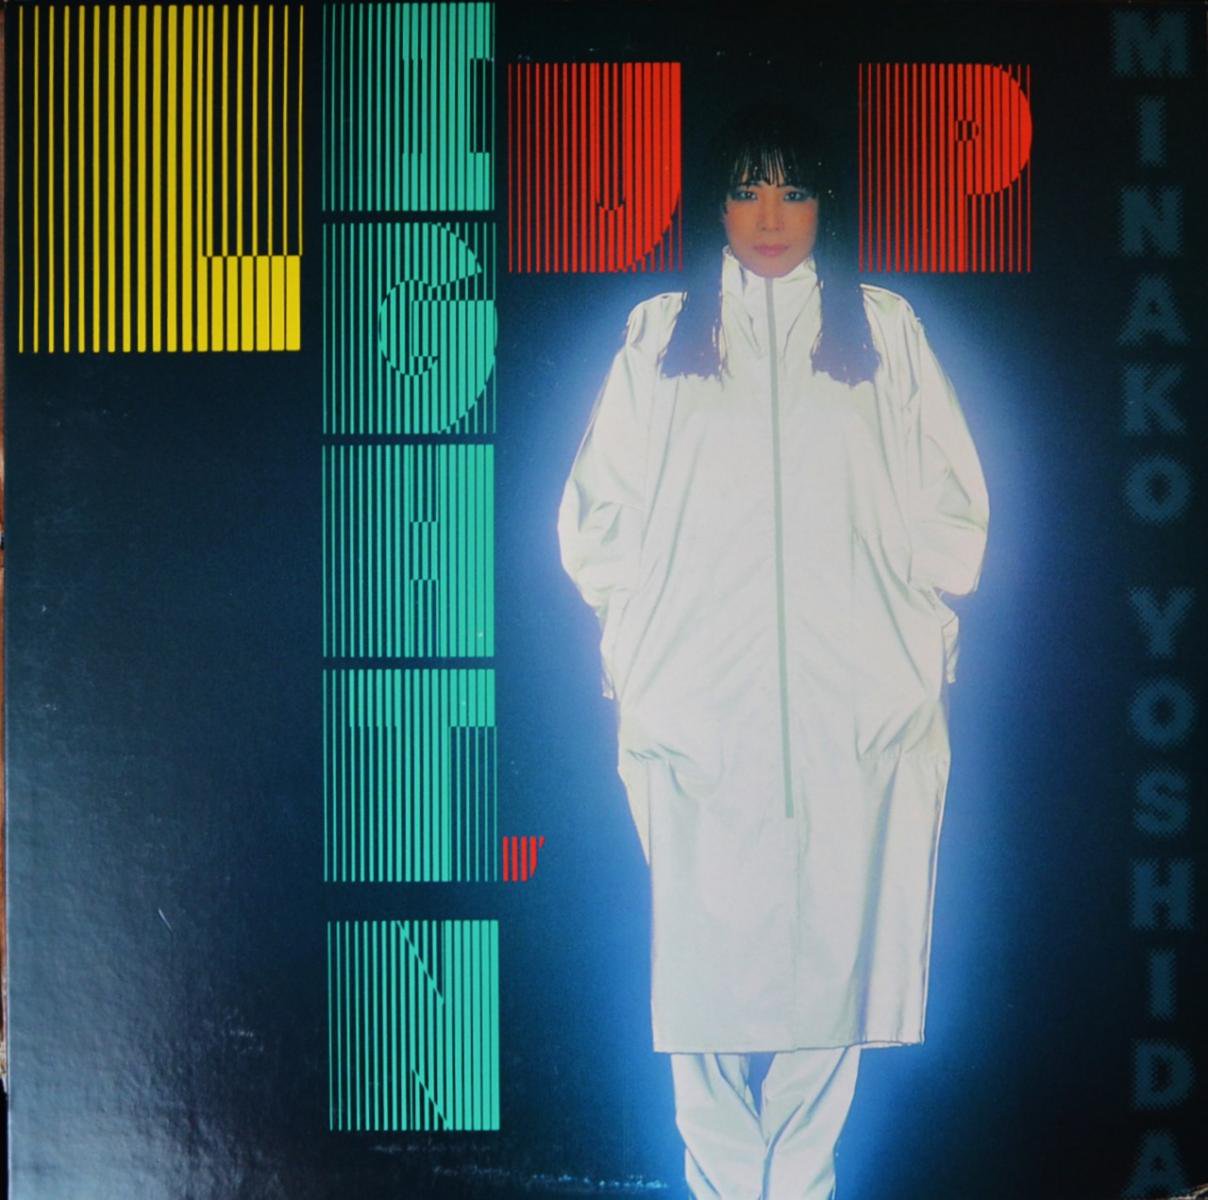 吉田美奈子 MINAKO YOSHIDA / ライトゥン・アップ LIGHT'N UP (LP)